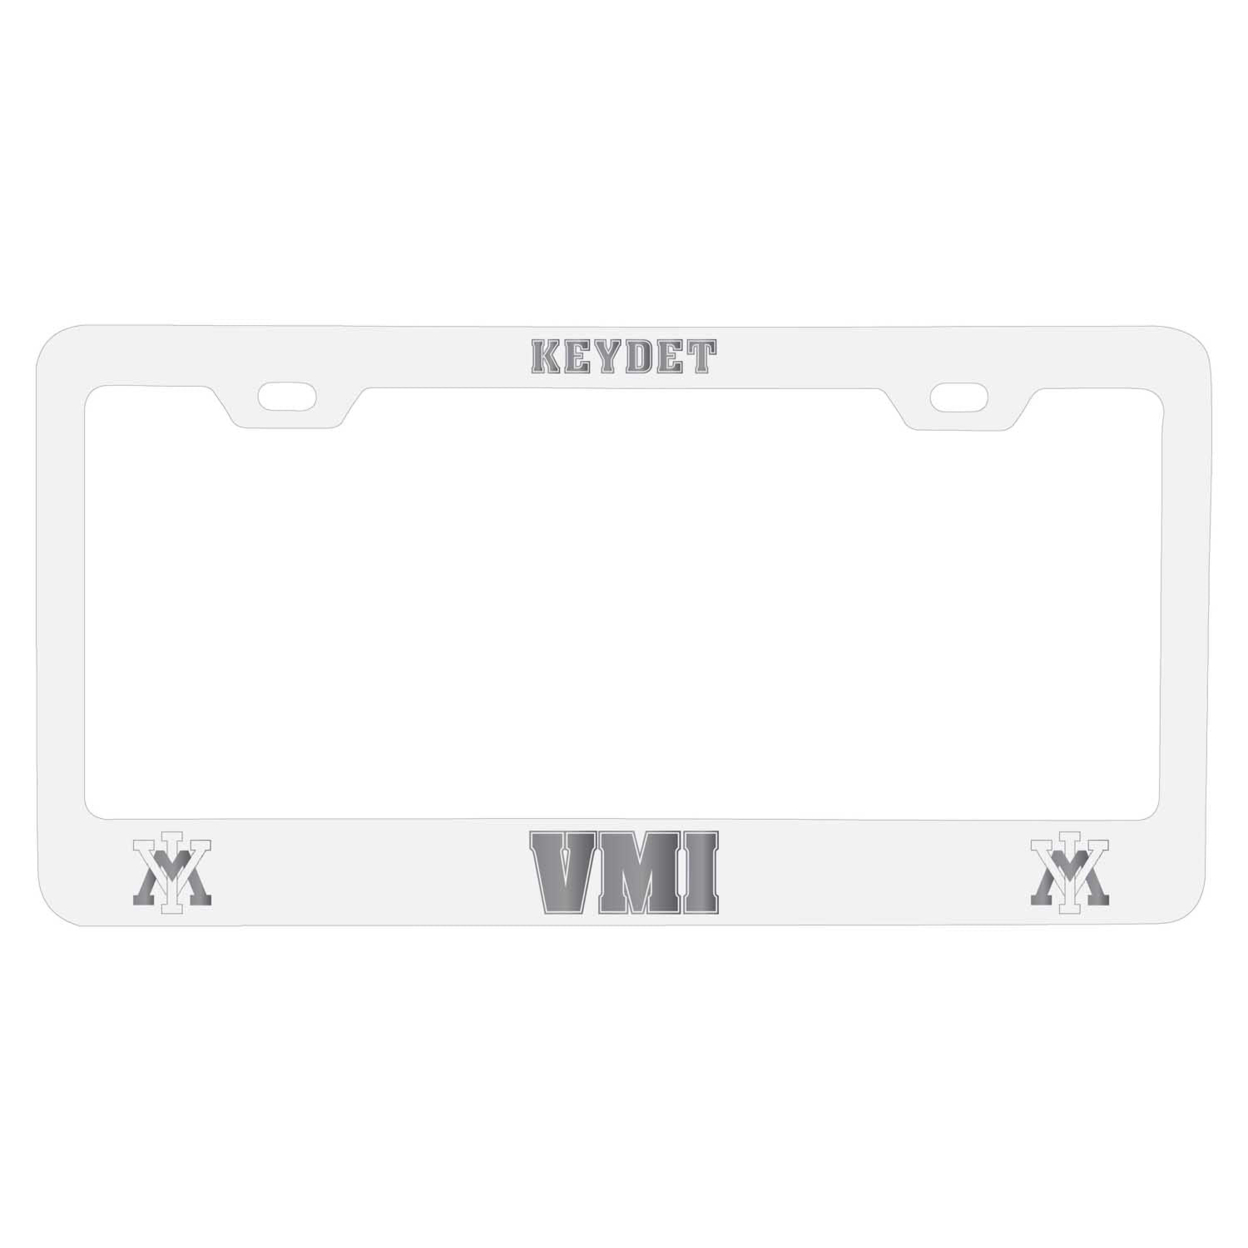 VMI Keydets Etched Metal License Plate Frame Choose Your Color